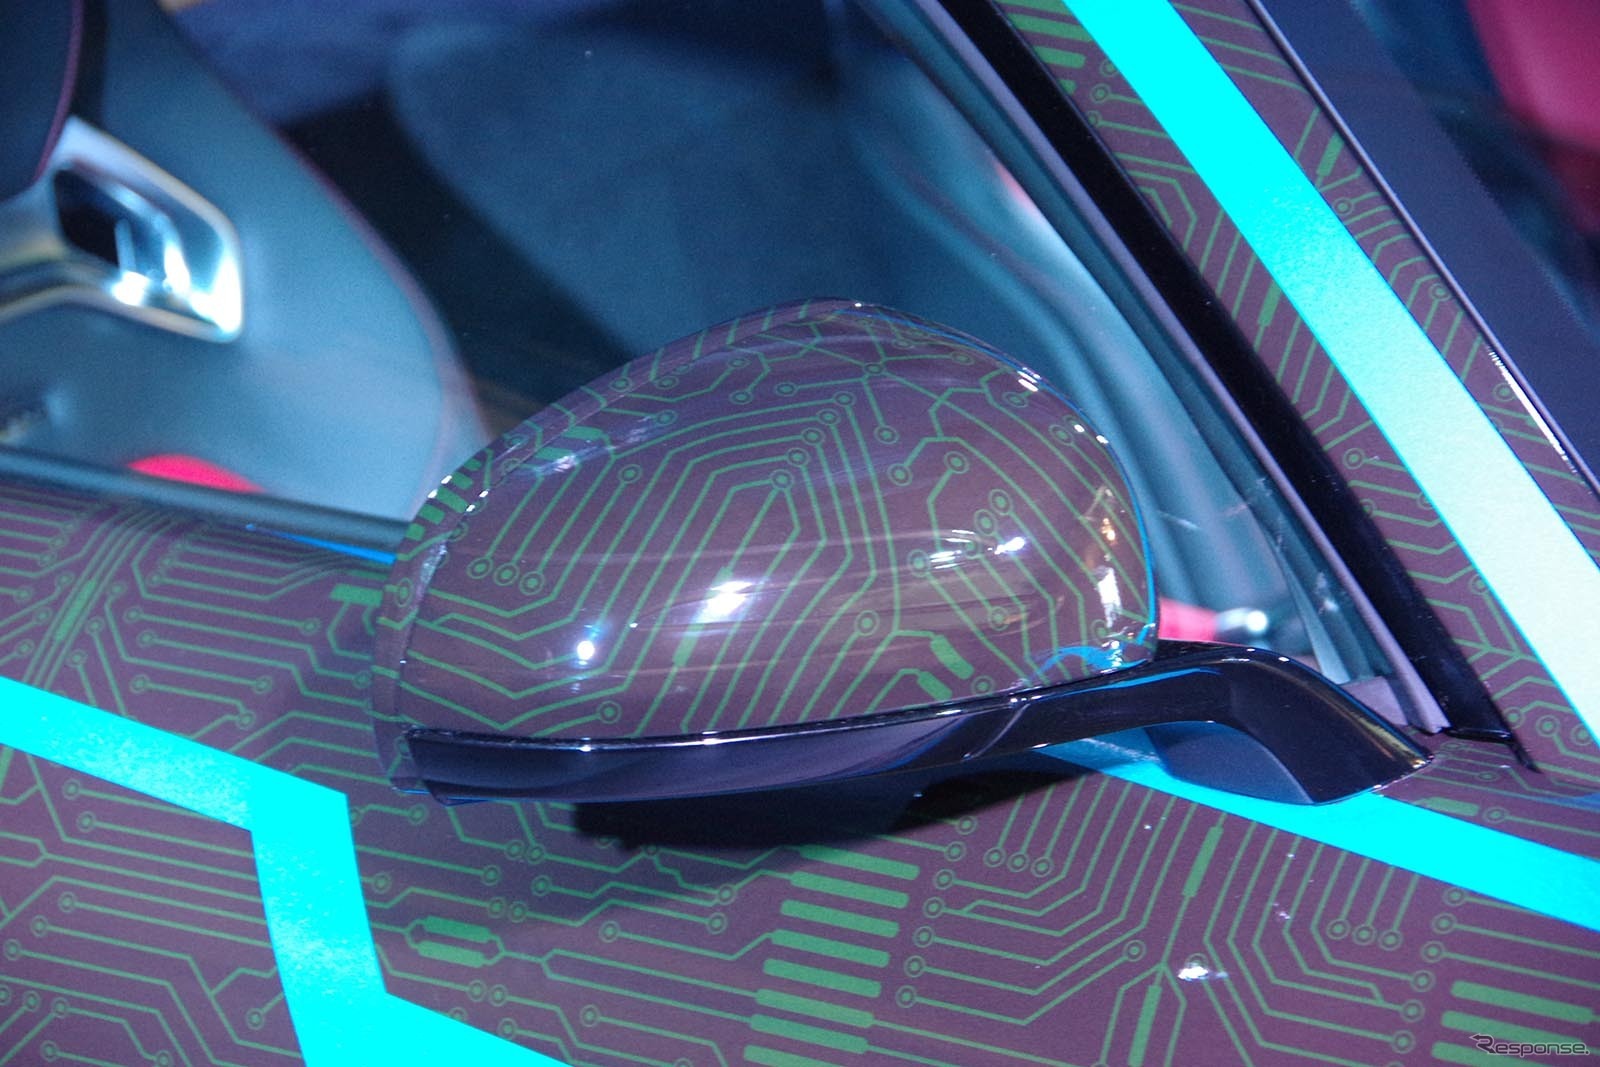 『ネクストライドロン』として劇場版仮面ライダードライブに登場するメルセデス AMG GT